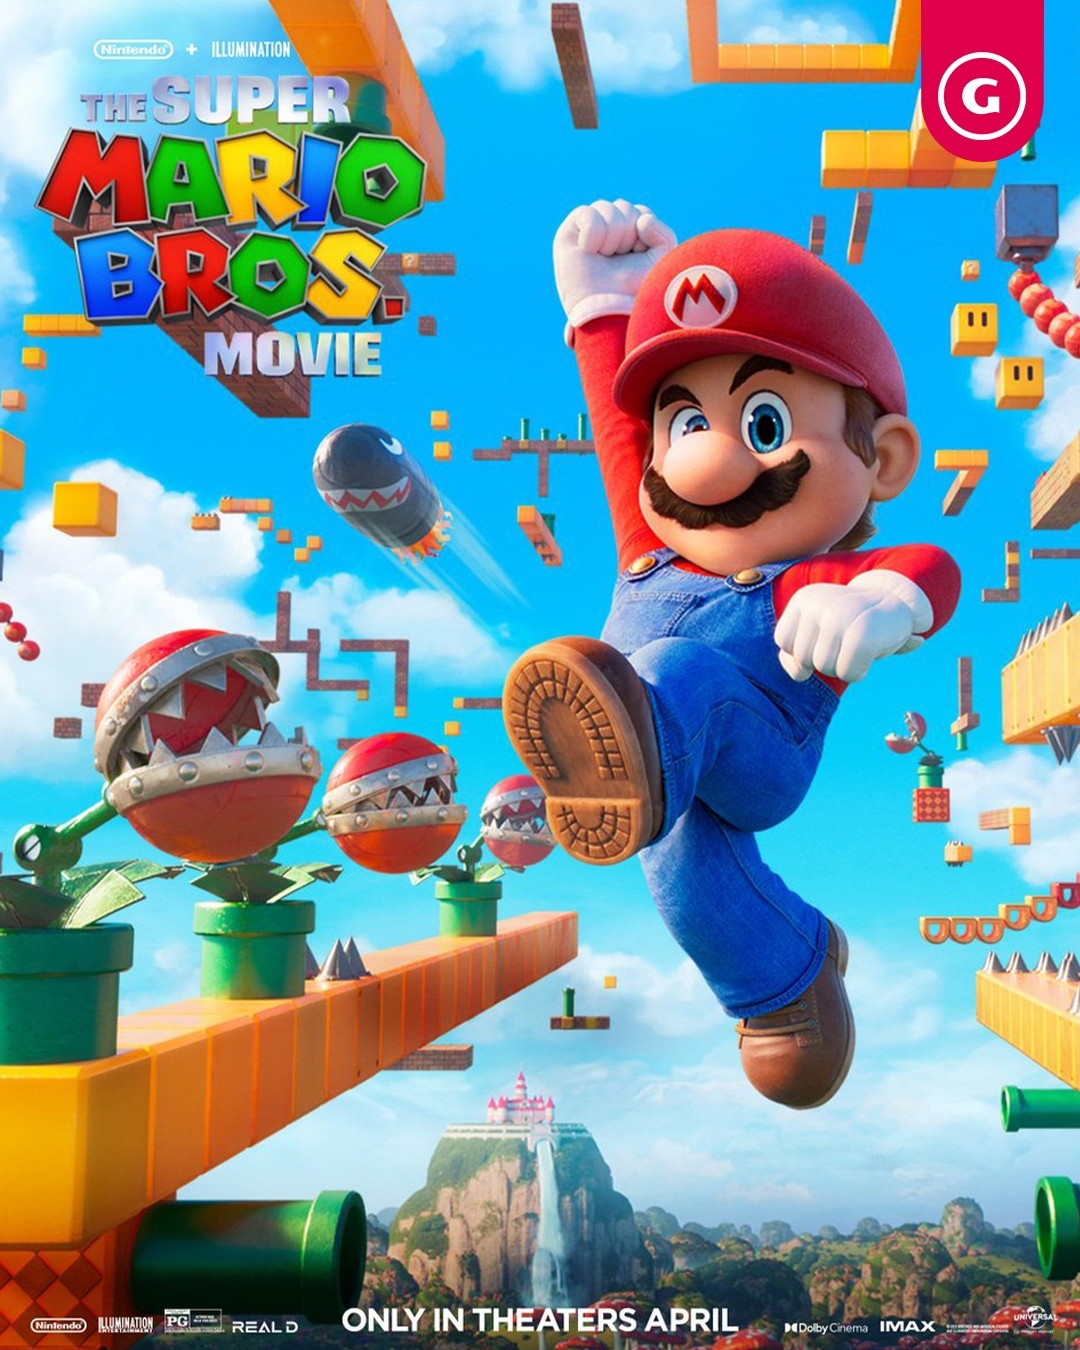 New Super Mario Bros. - GameSpot